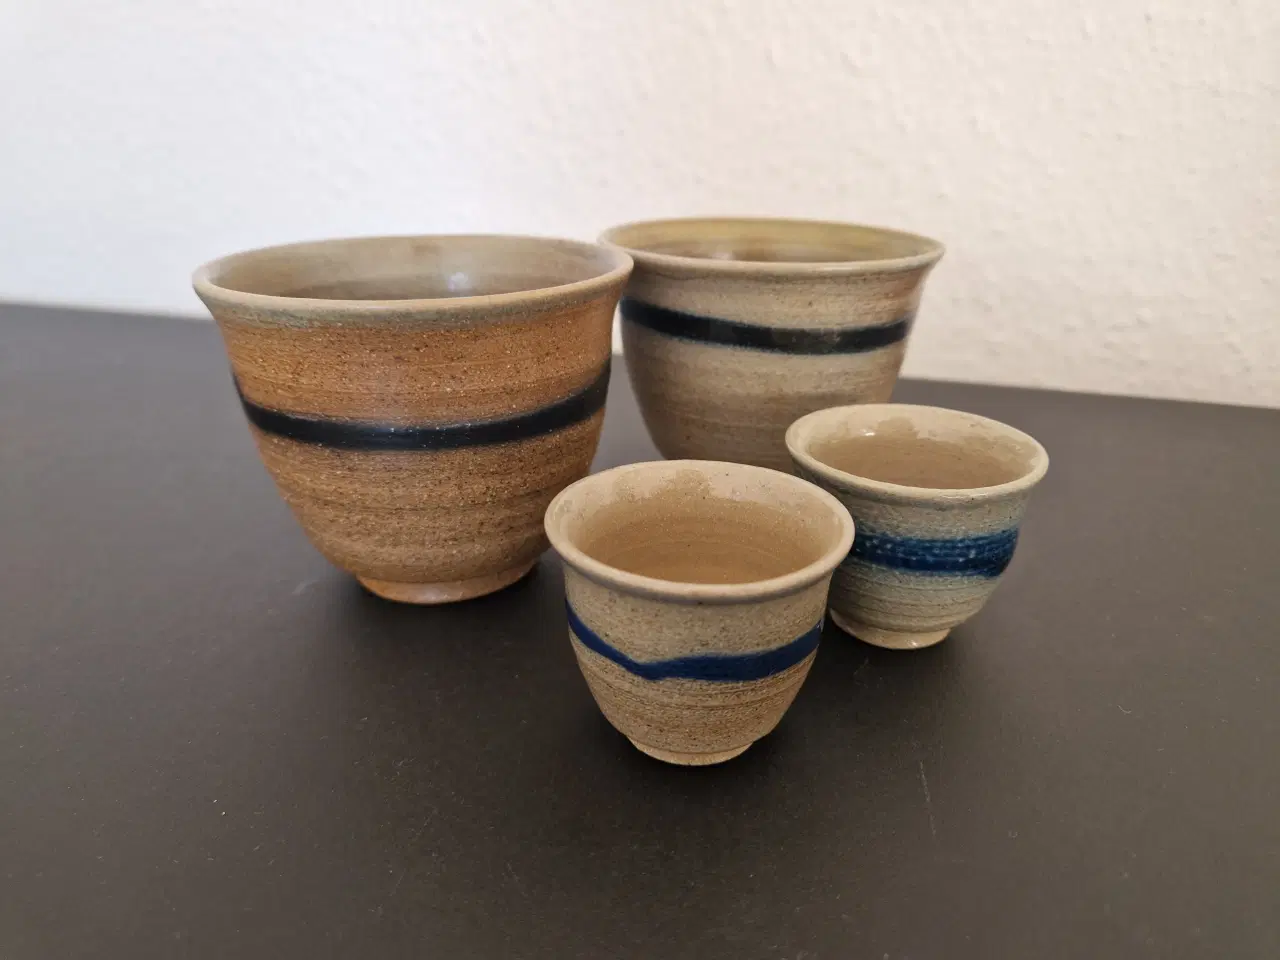 Billede 1 - 2 kaffekopper og 2 snapseglas af keramik.